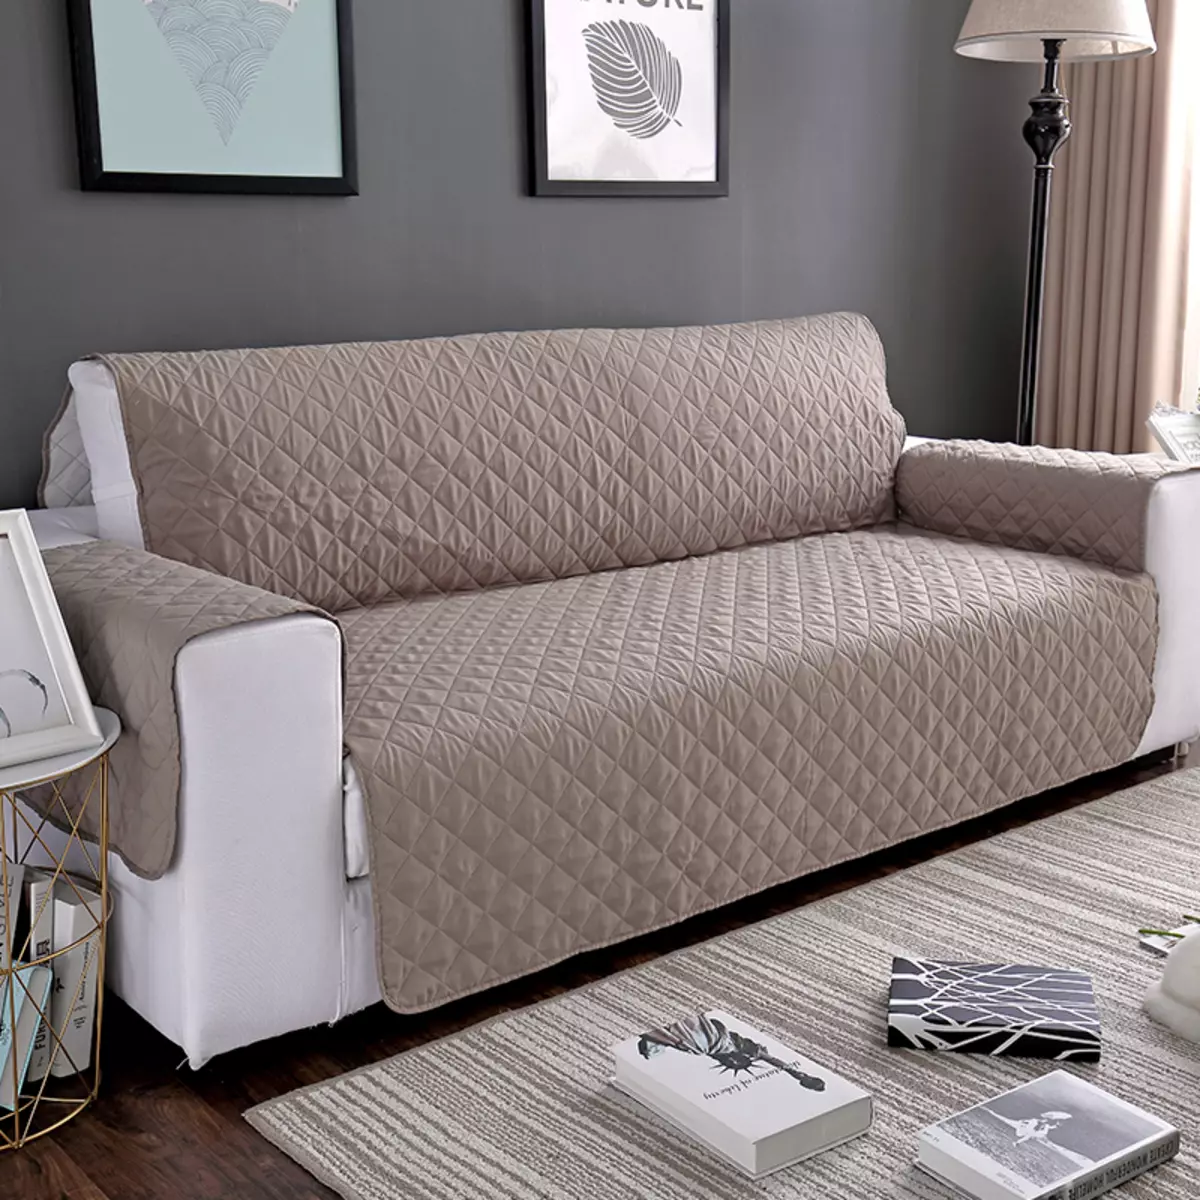 Kanepede Dava IKEA: Kol dayamaları olmayan köşe kanepeleri için yatak örtüleri seçimi, evrensel kapaklar ve diğer seçenekler 8963_9